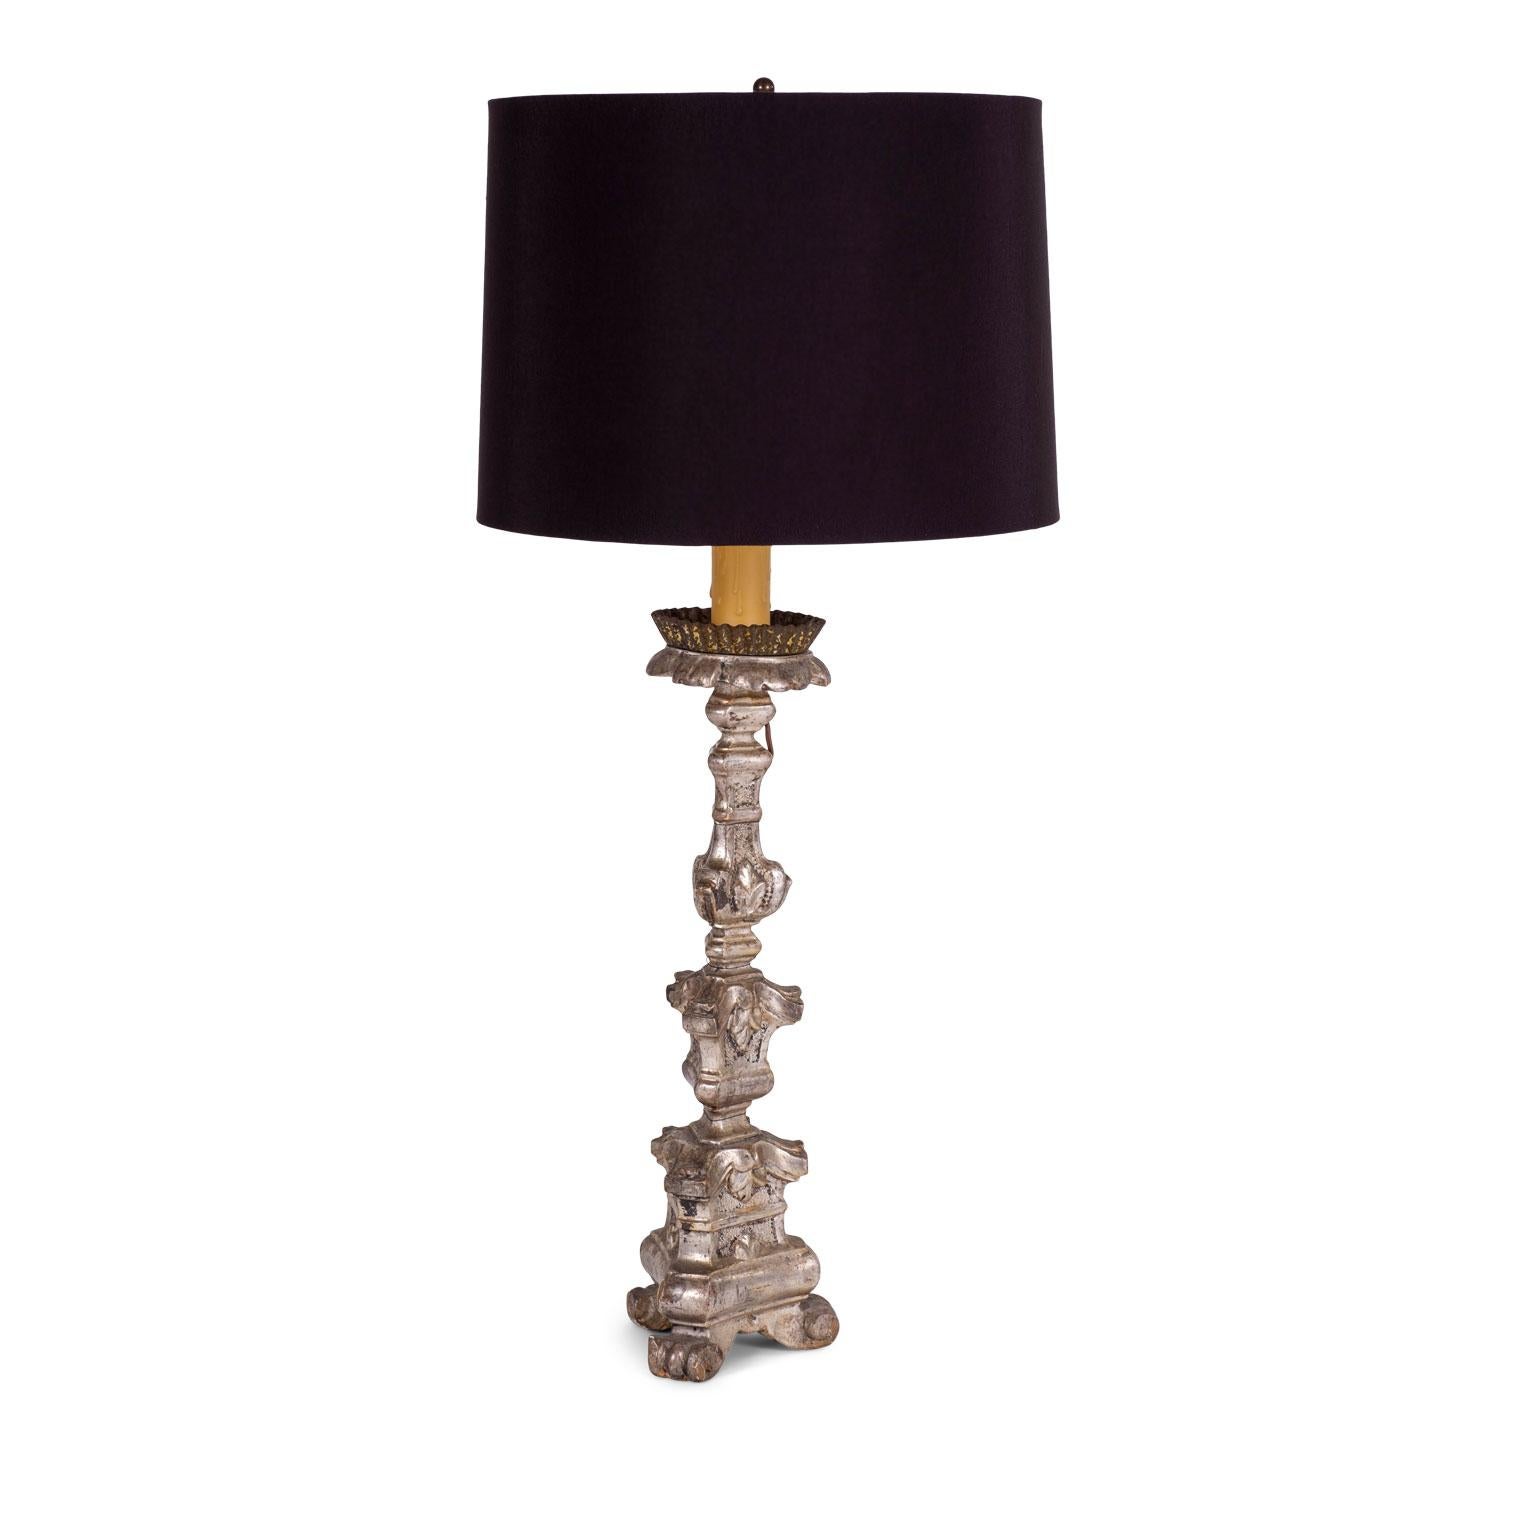 Chandelier argenté : chandelier italien sculpté à la main et argenté, utilisé comme lampe de table avec un abat-jour complémentaire noir (les dimensions indiquées incluent l'abat-jour).

Note : La finition originale/précoce du métal antique et